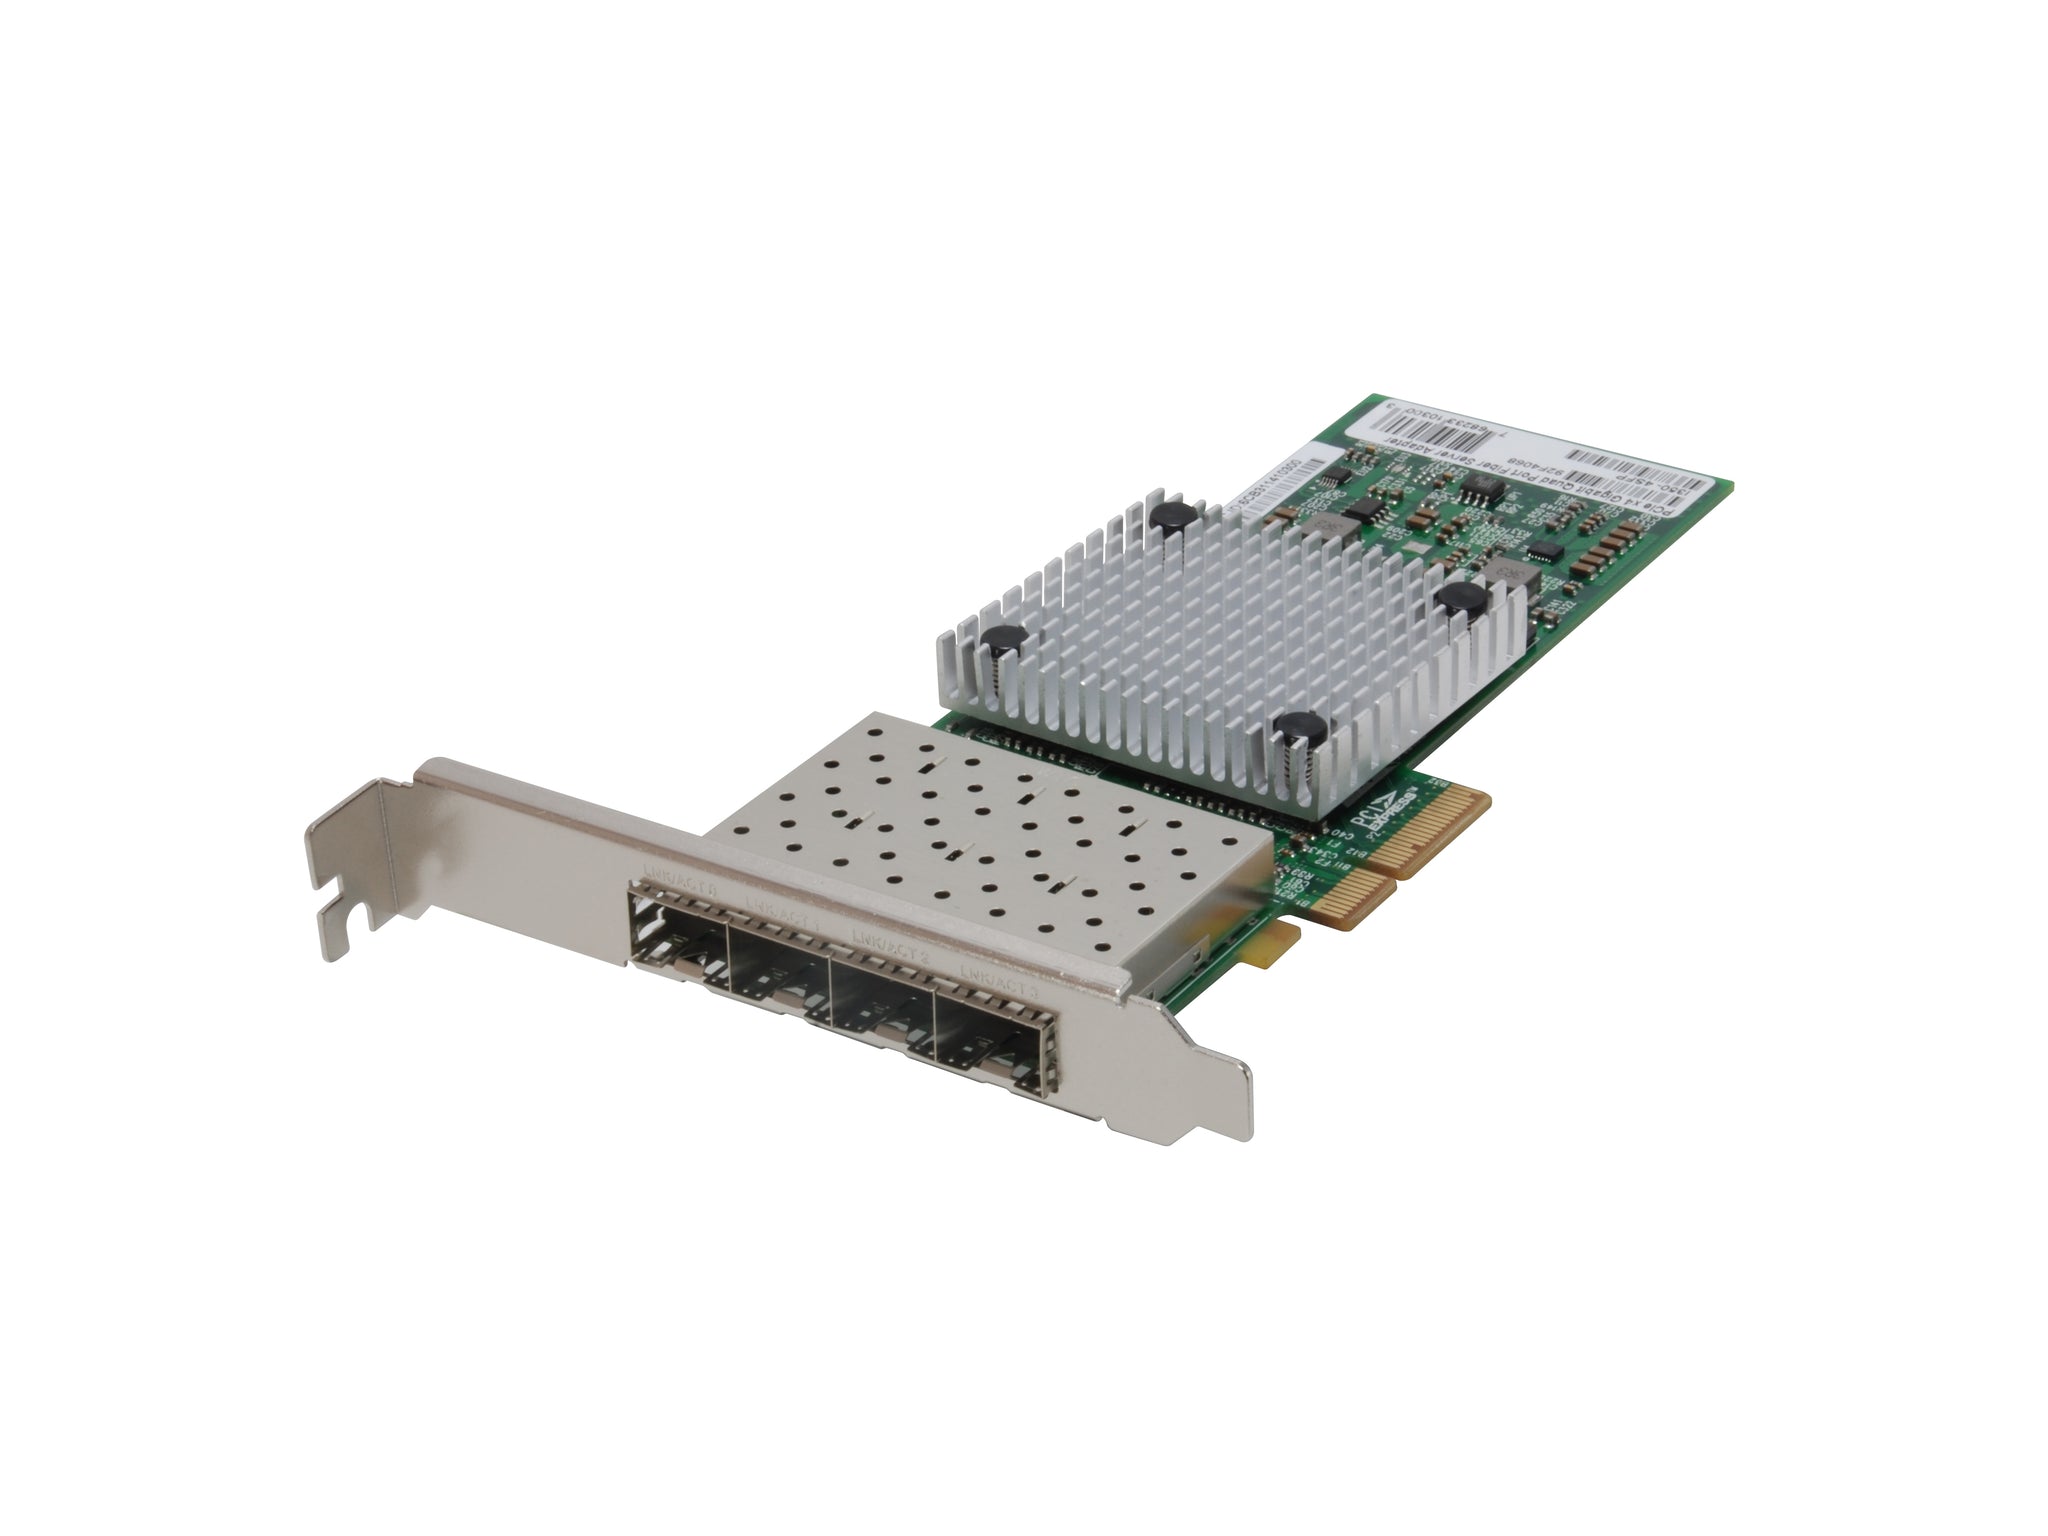 GNC-0124 Gigabit Fiber PCIe Network Card, Quad SFP, 4 x PCIe